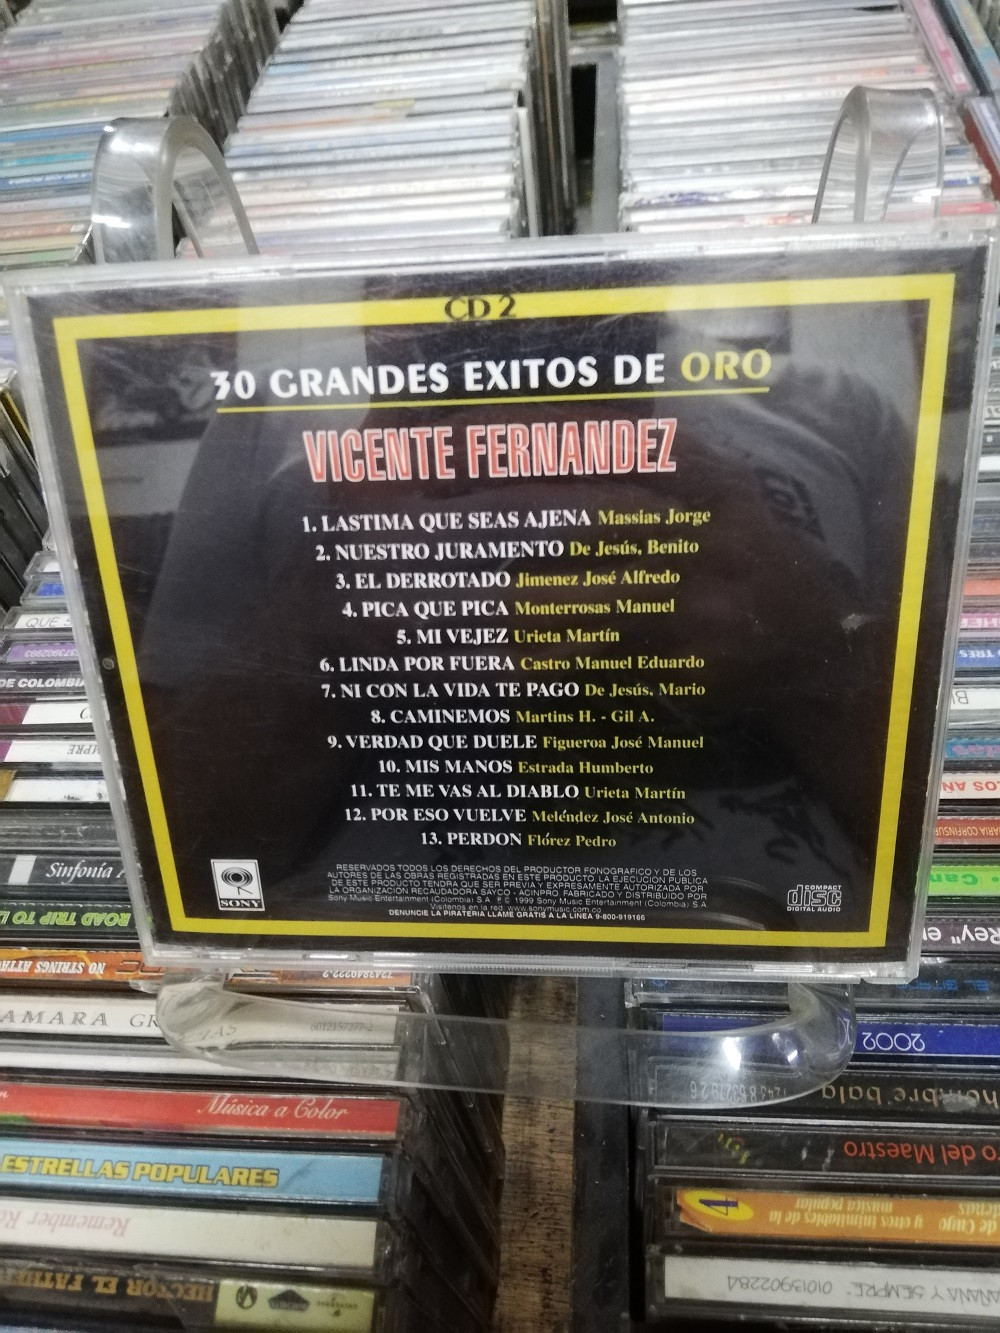 Imagen CD VICENTE FERNANDEZ - 30 GRANDES EXITOS DE ORO VOL. 2 2